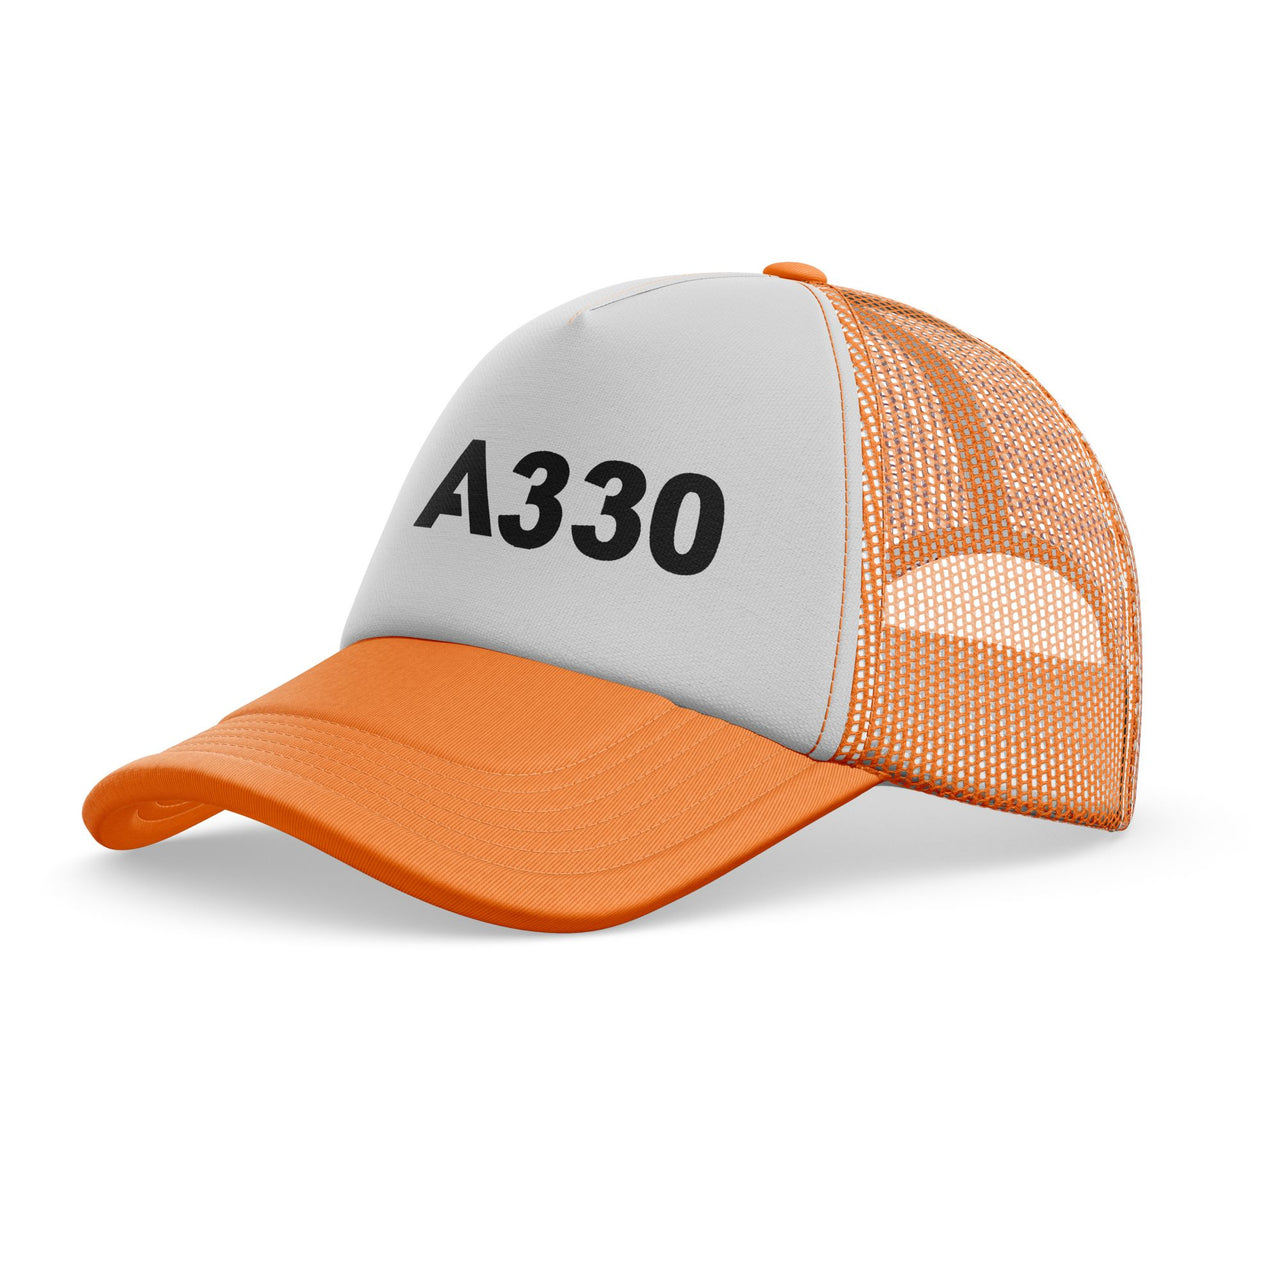 A330 Flat Text Designed Trucker Caps & Hats